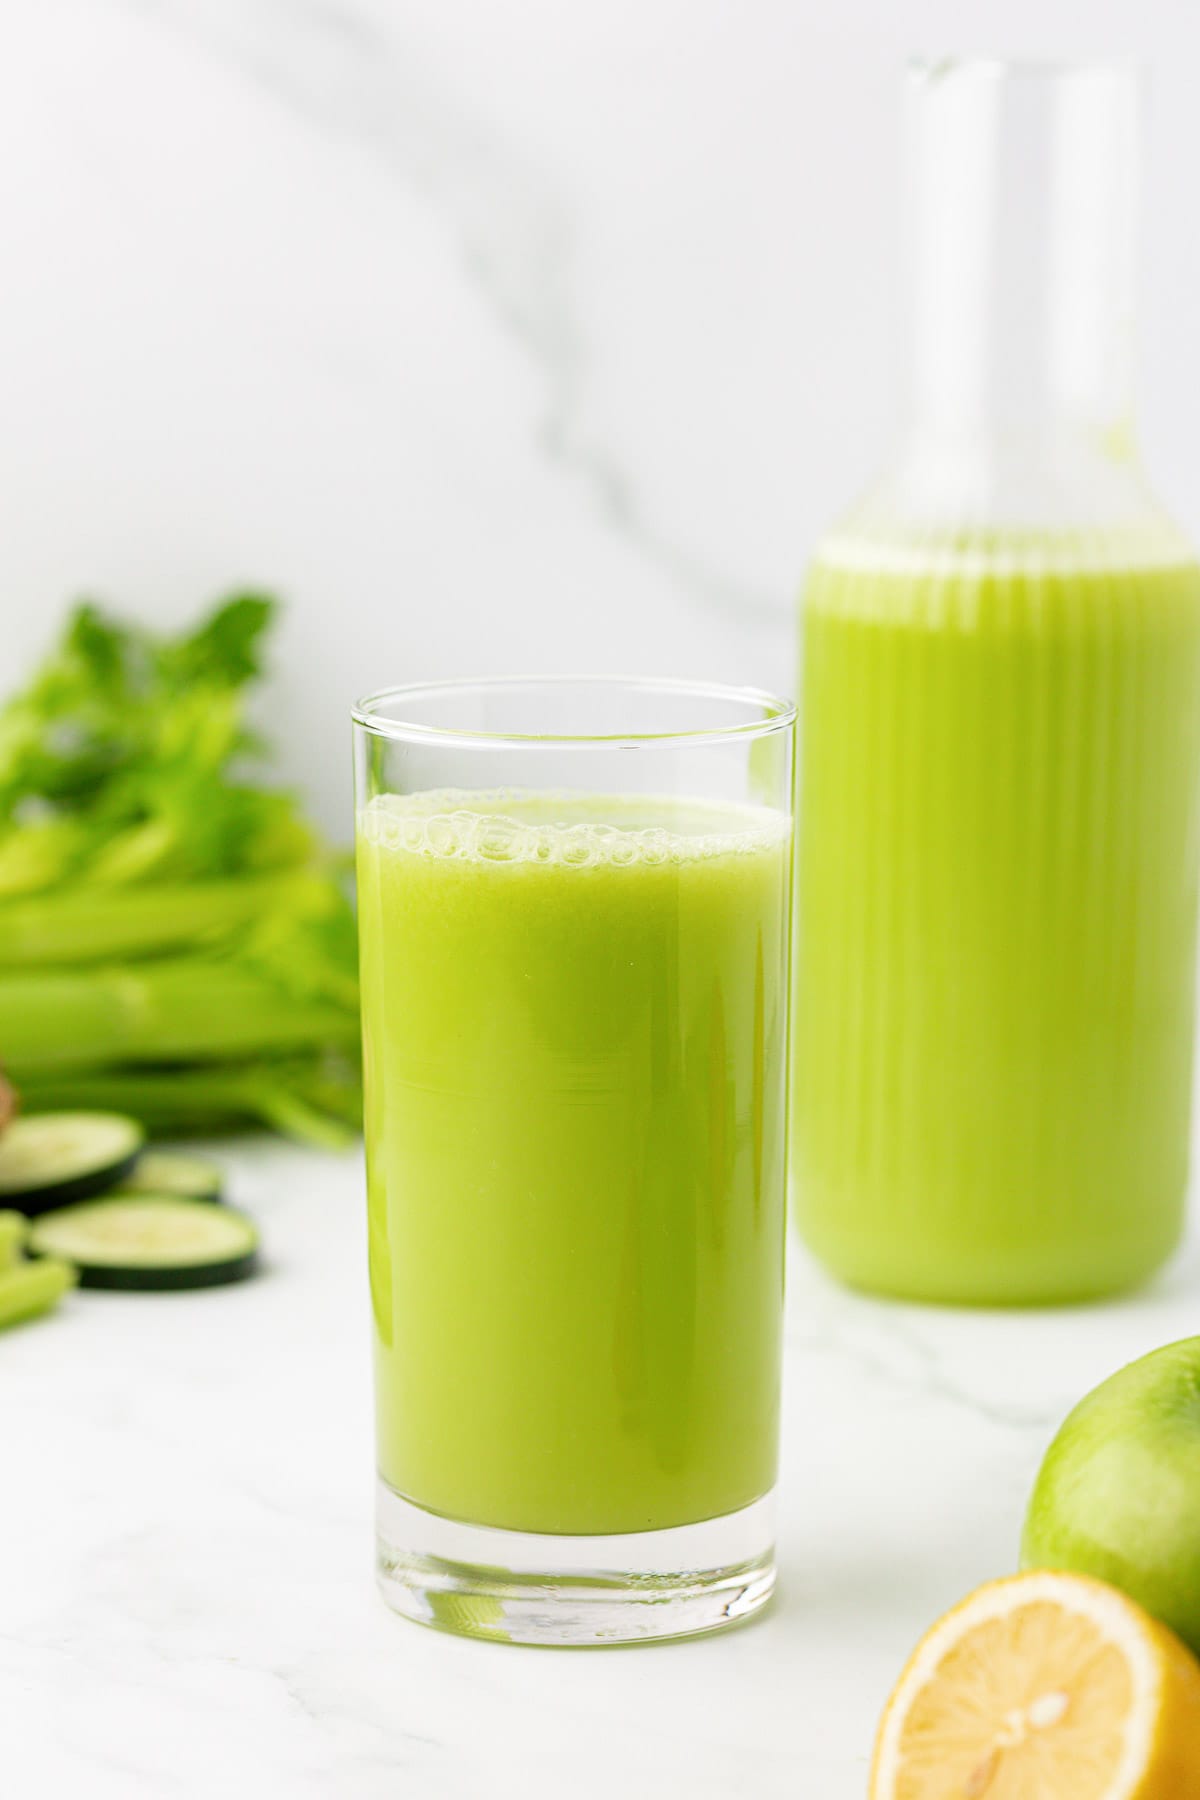 celery juice in a glass